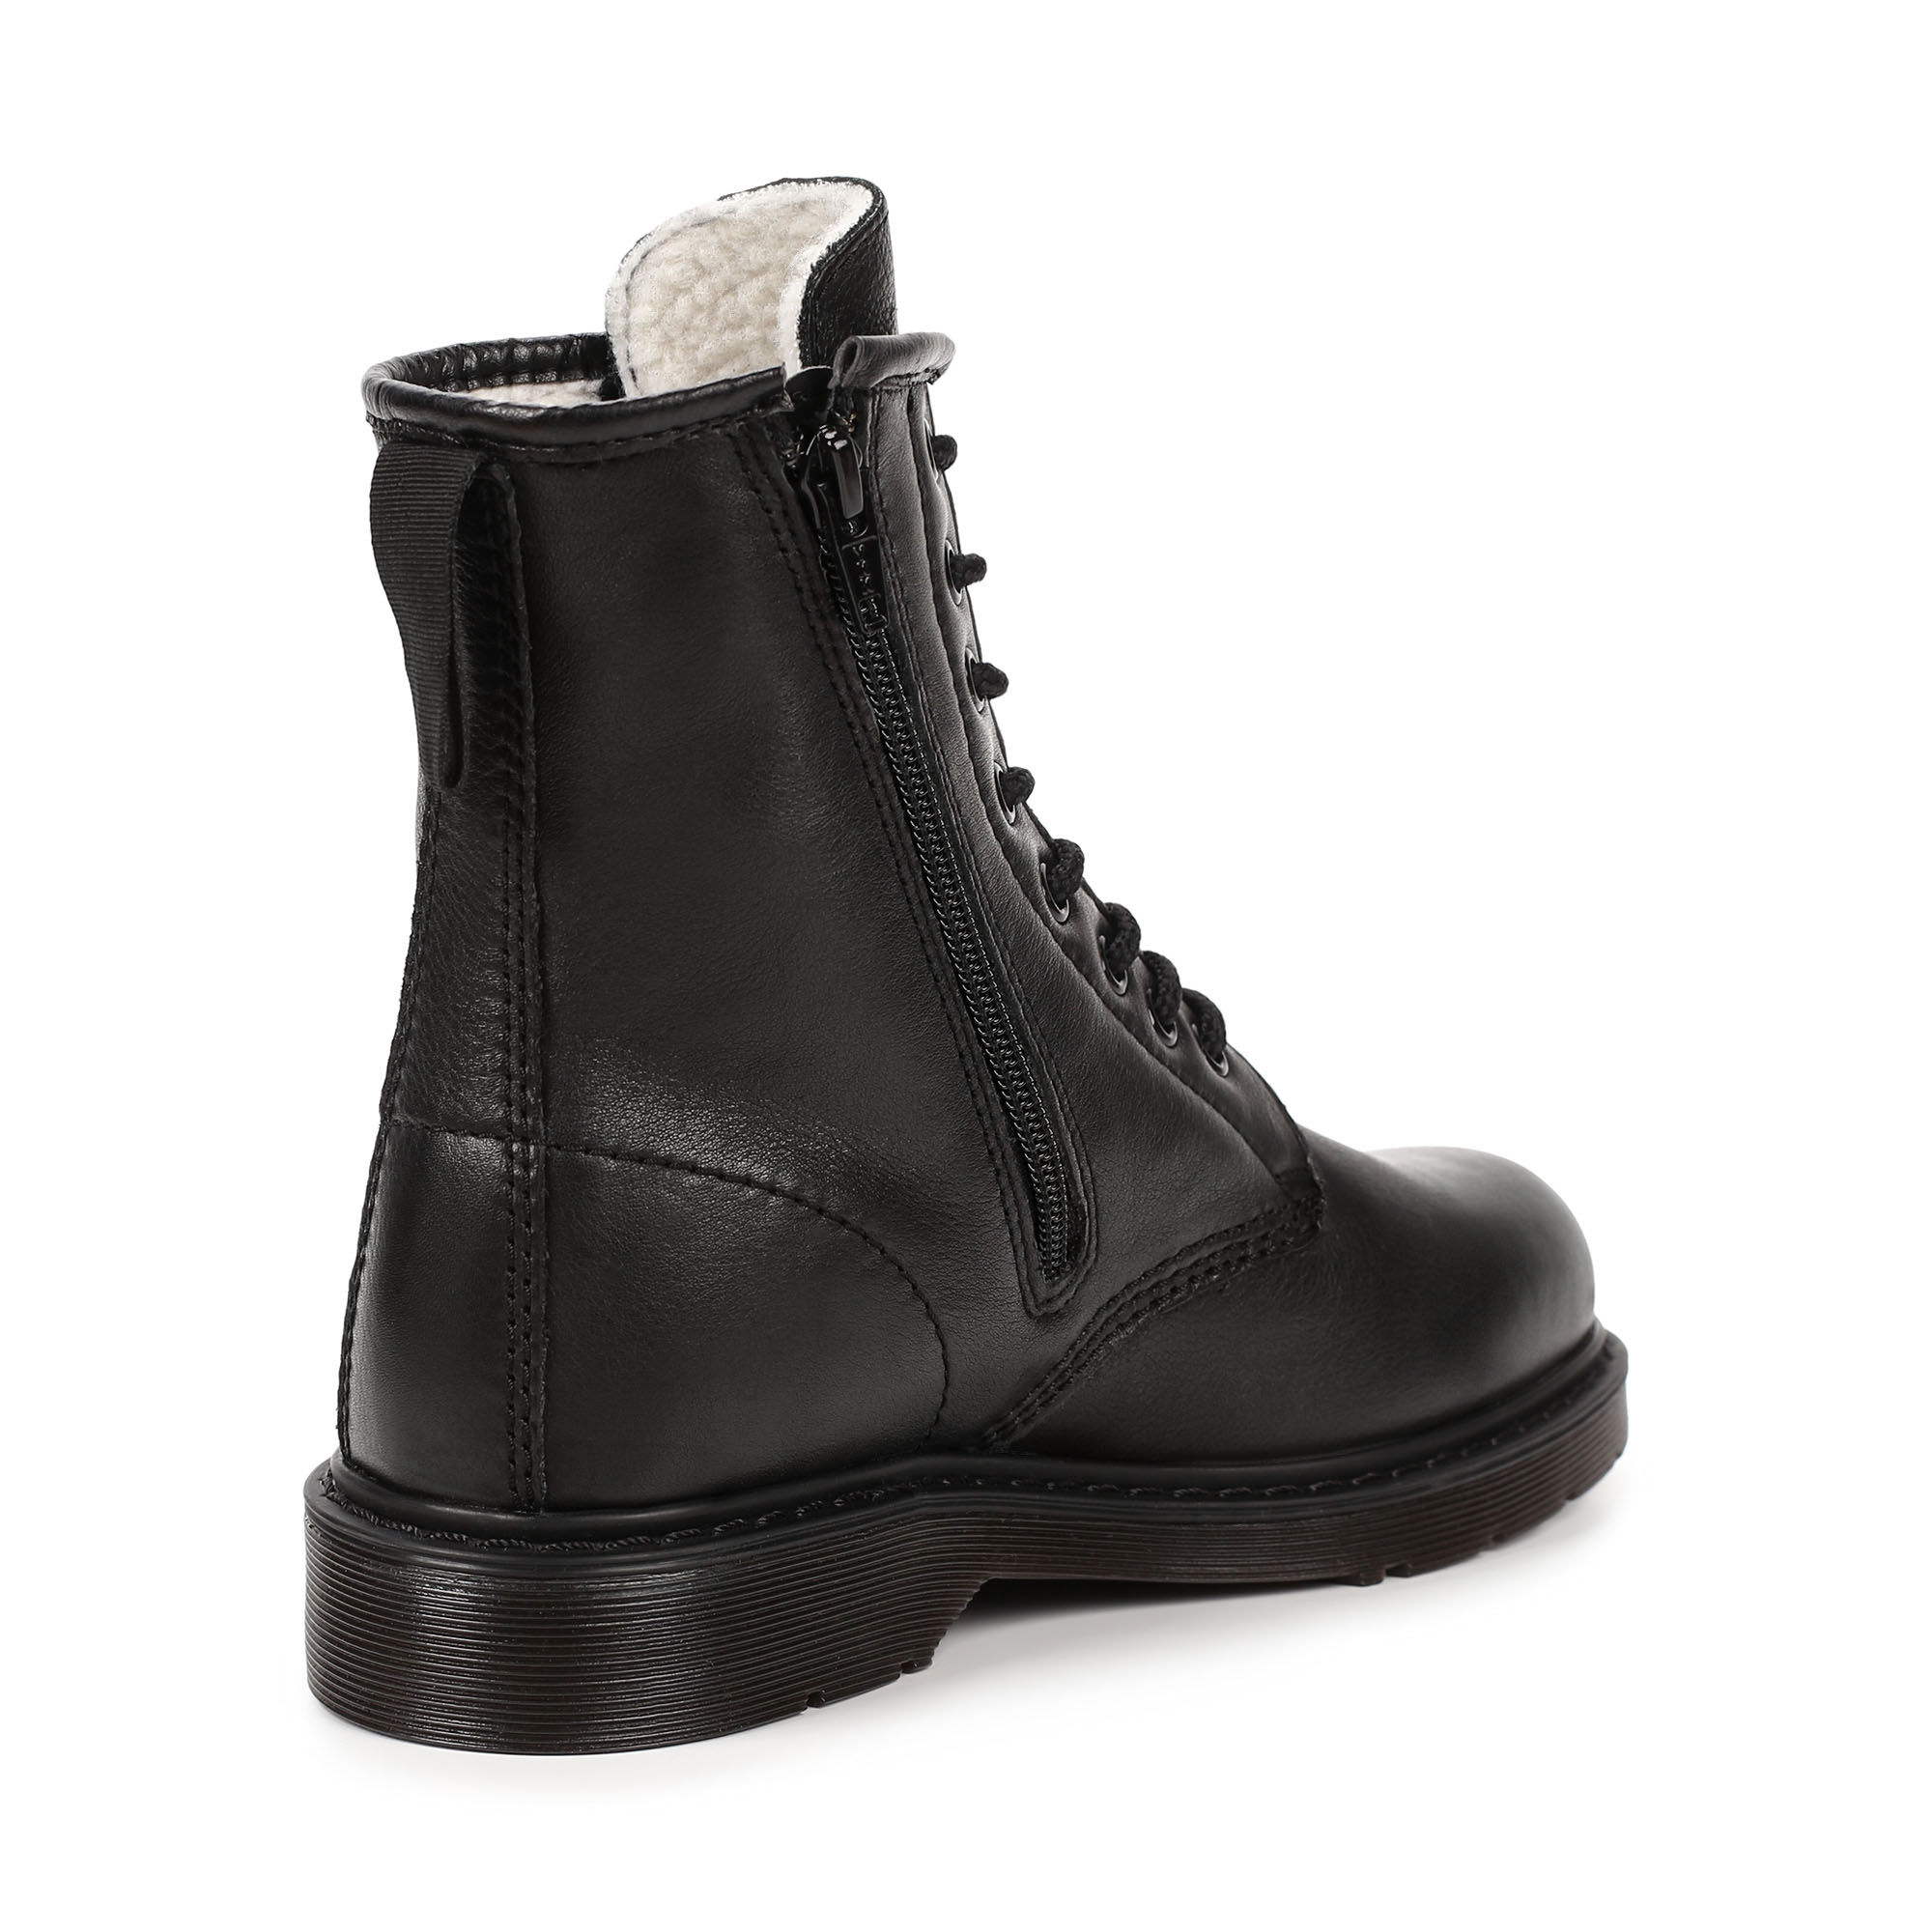 Ботинки Thomas Munz 569-162A-4102, цвет черный, размер 38 - фото 3